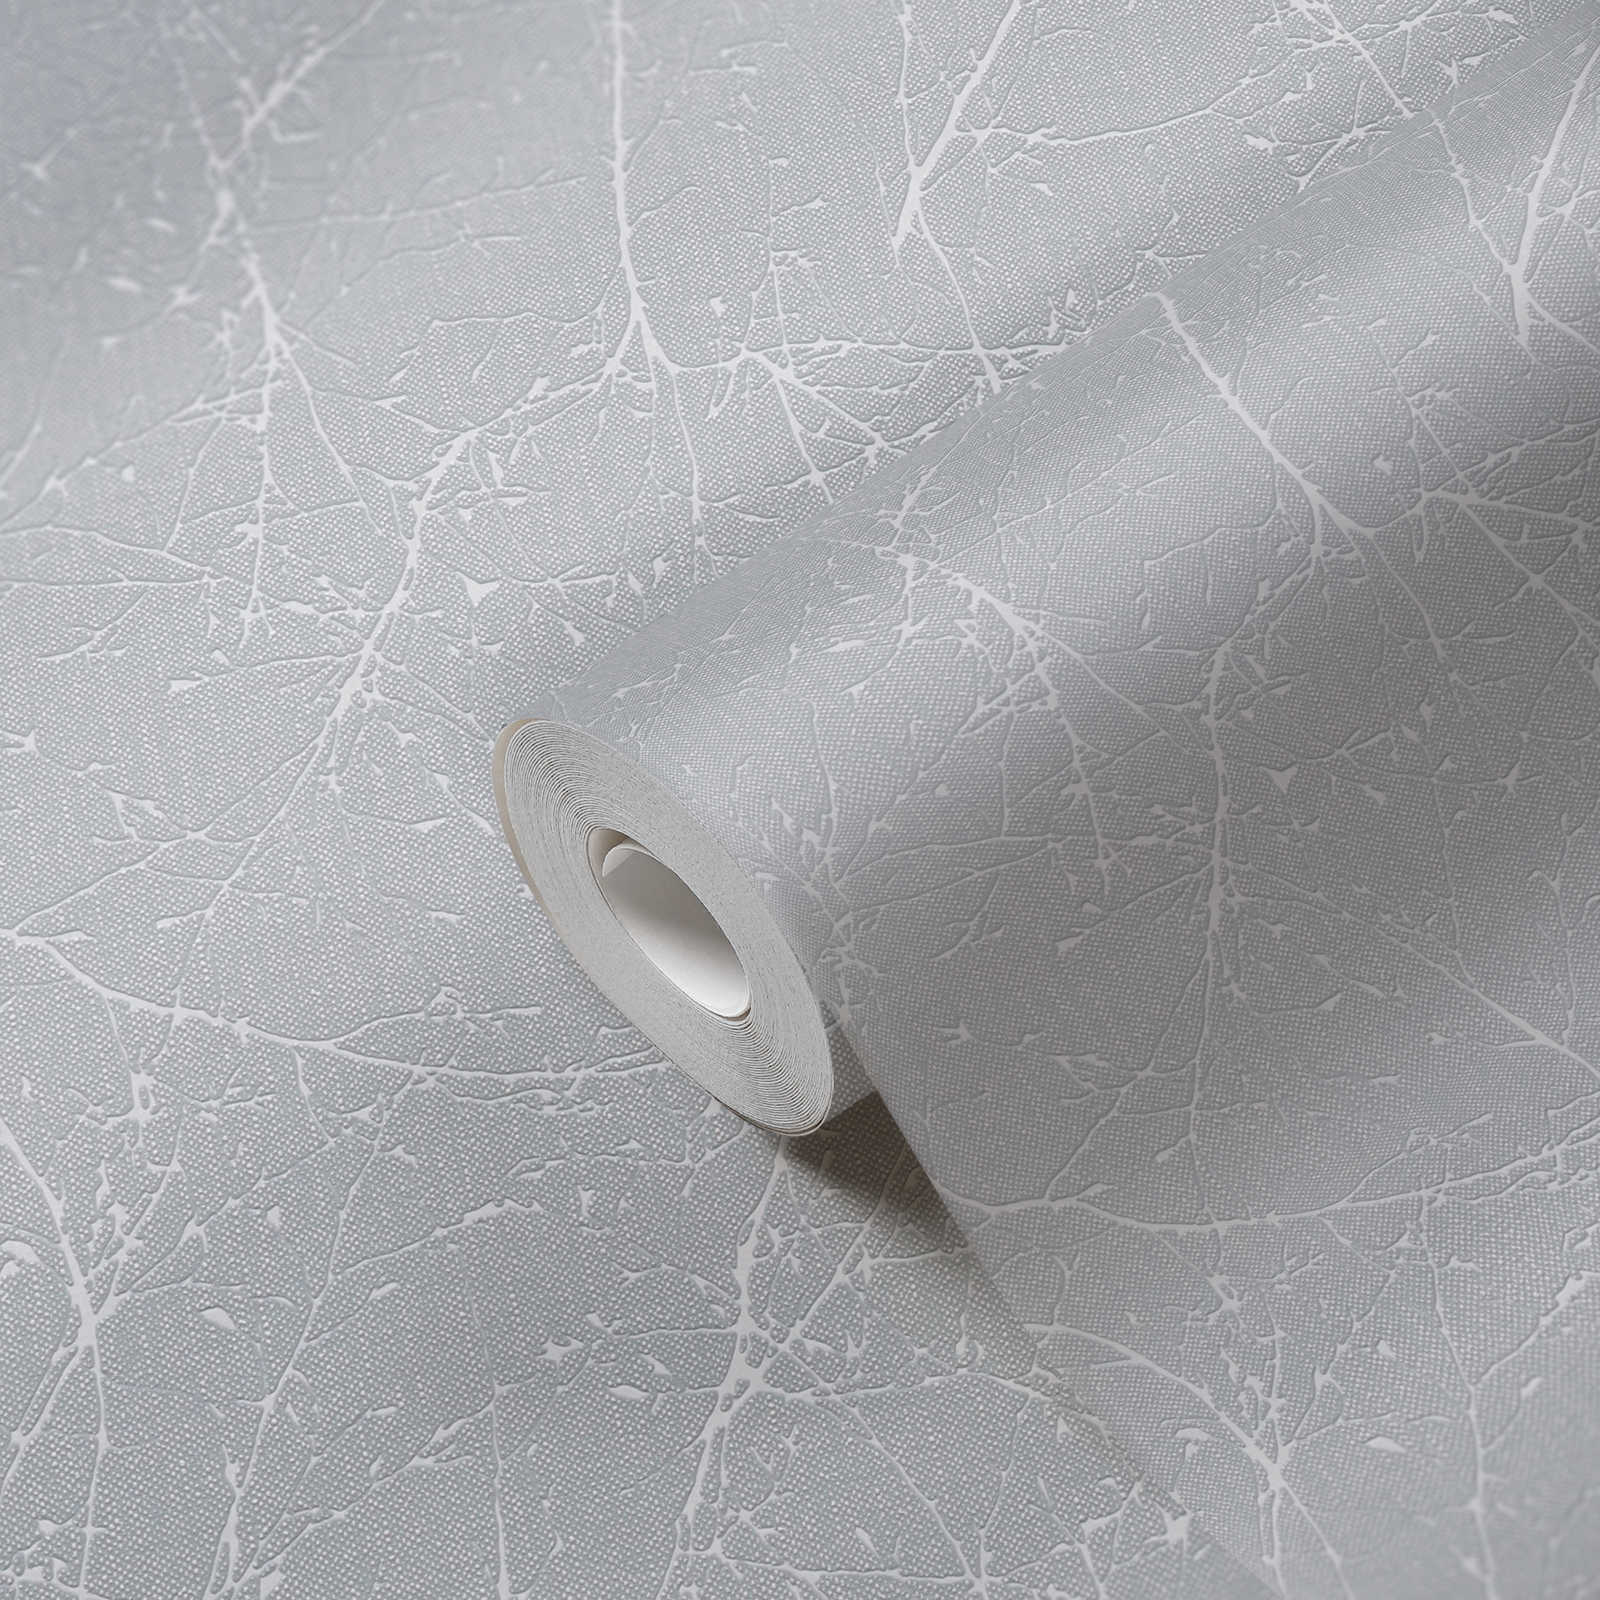             Papel pintado de tejido no tejido con motivos de ramas y estructura ligera - gris claro, blanco
        